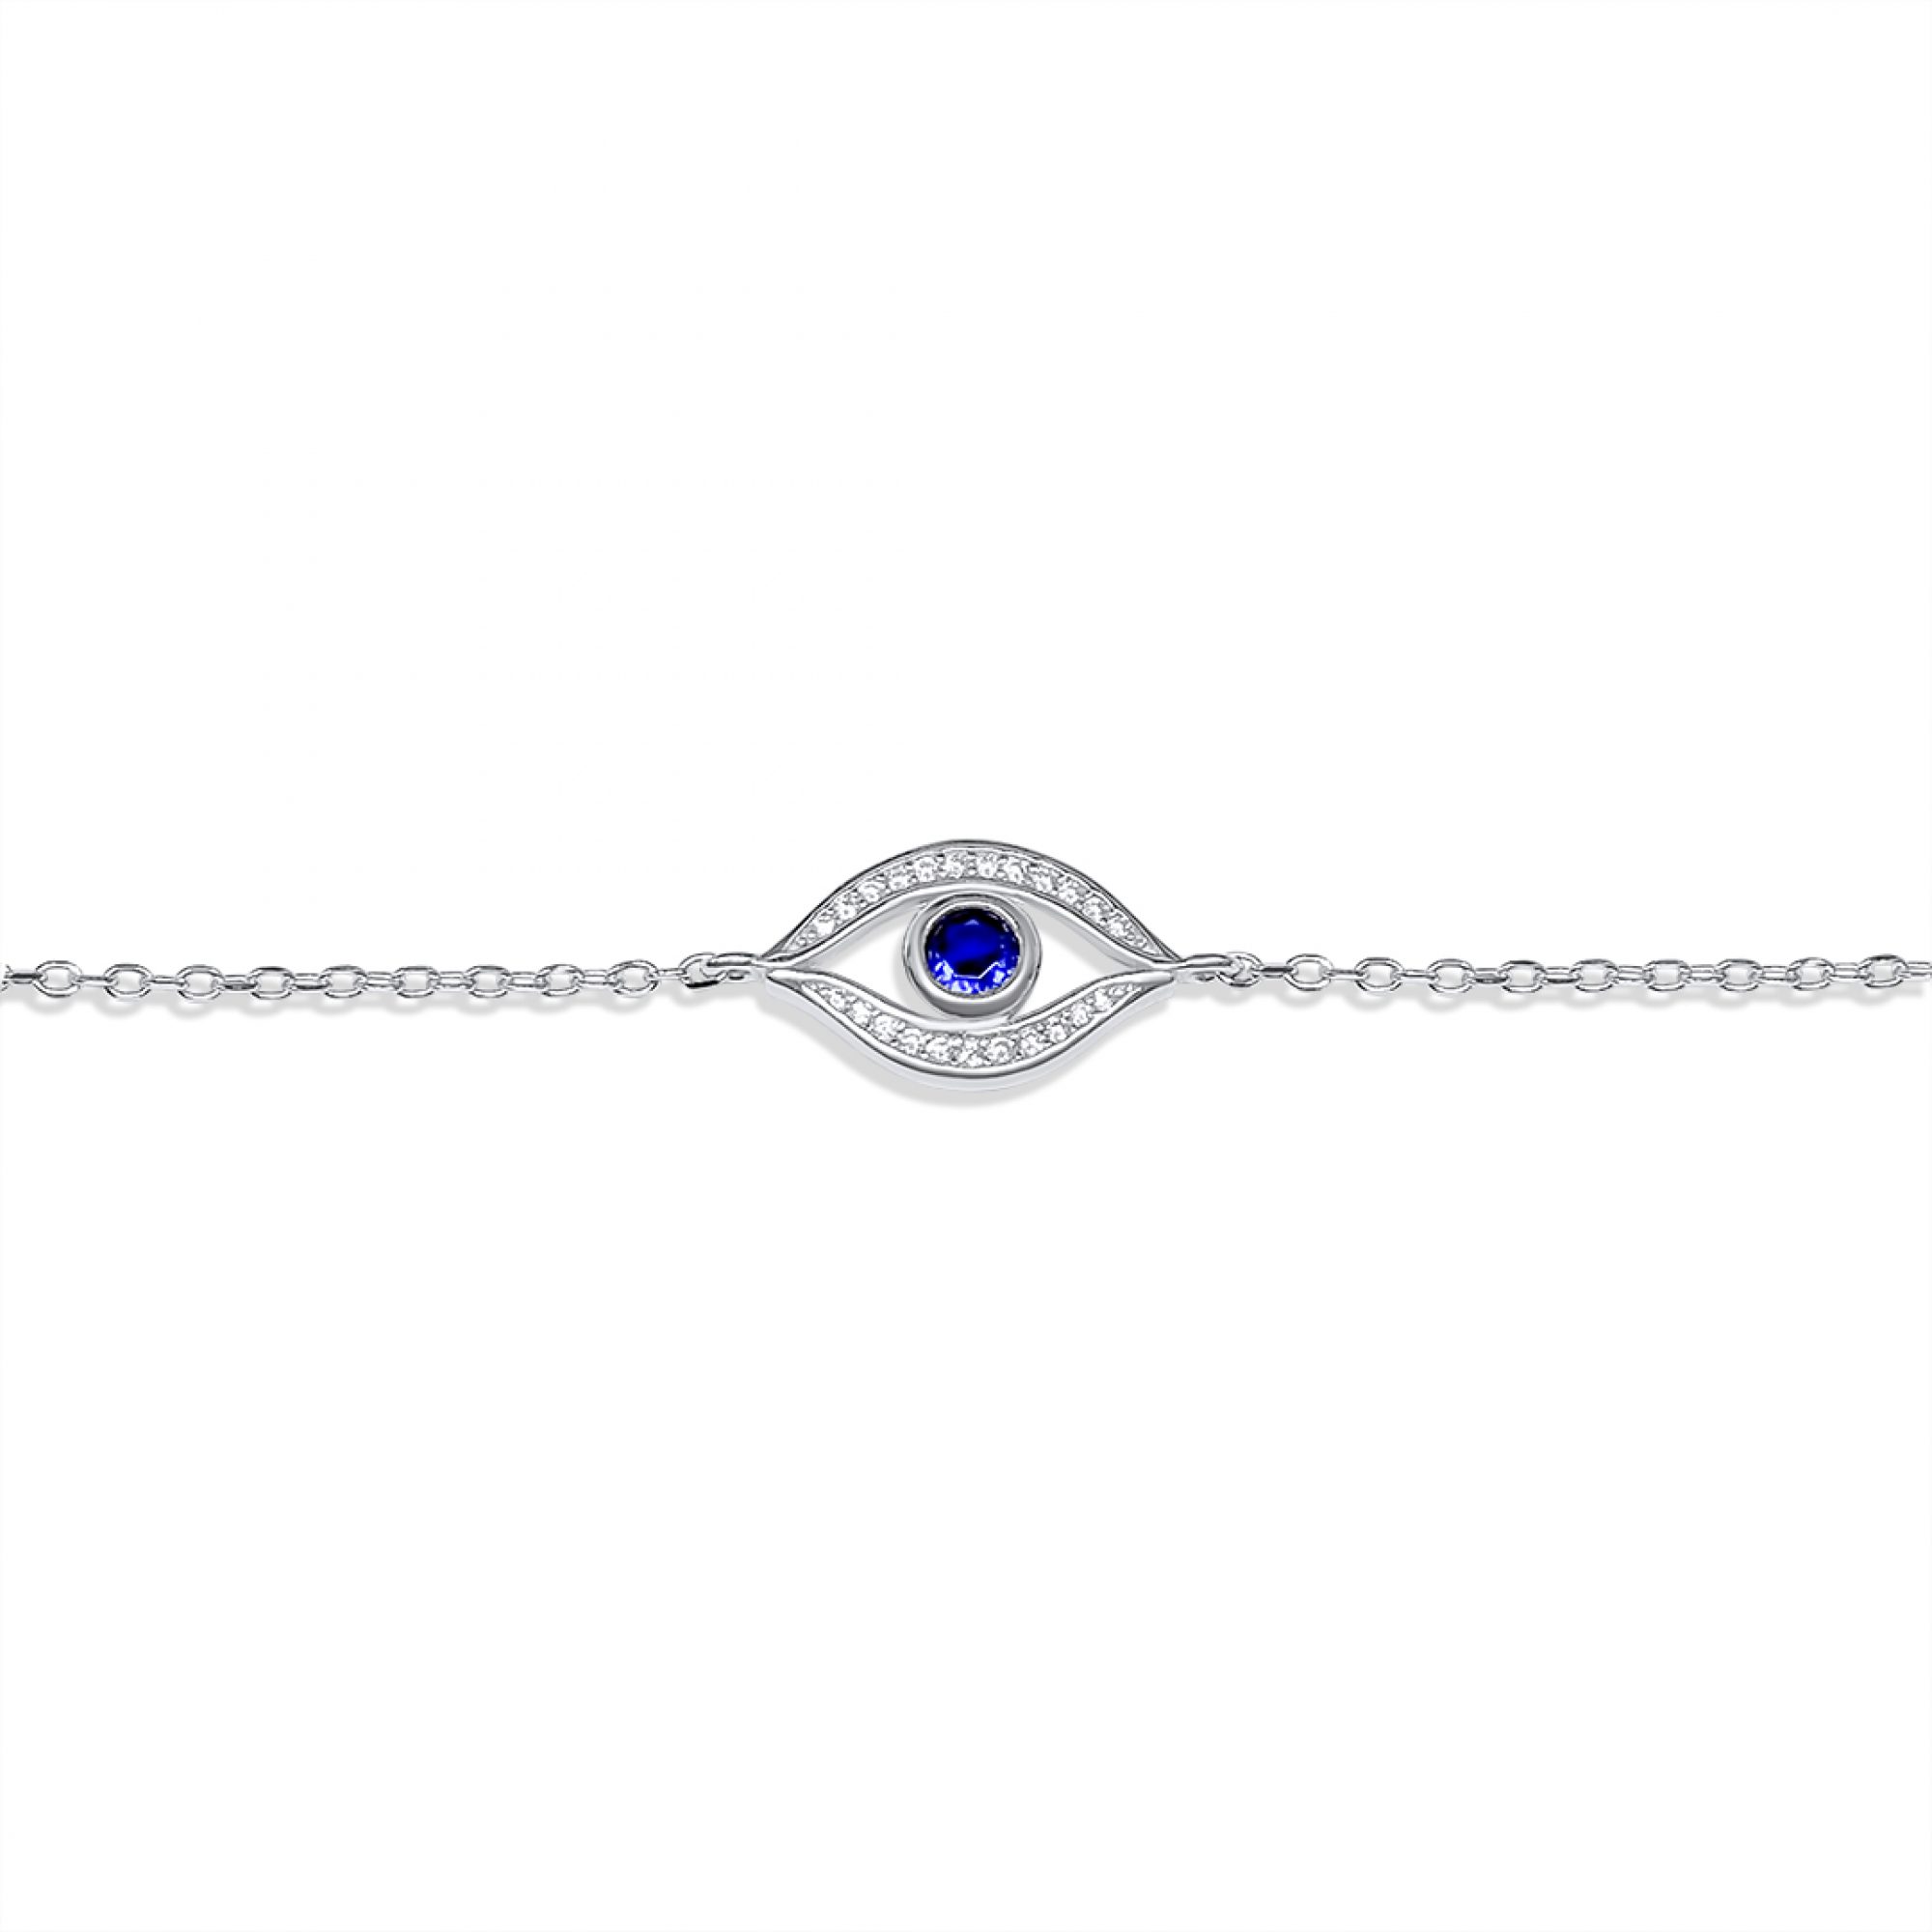 Eye bracelet with zircon stones